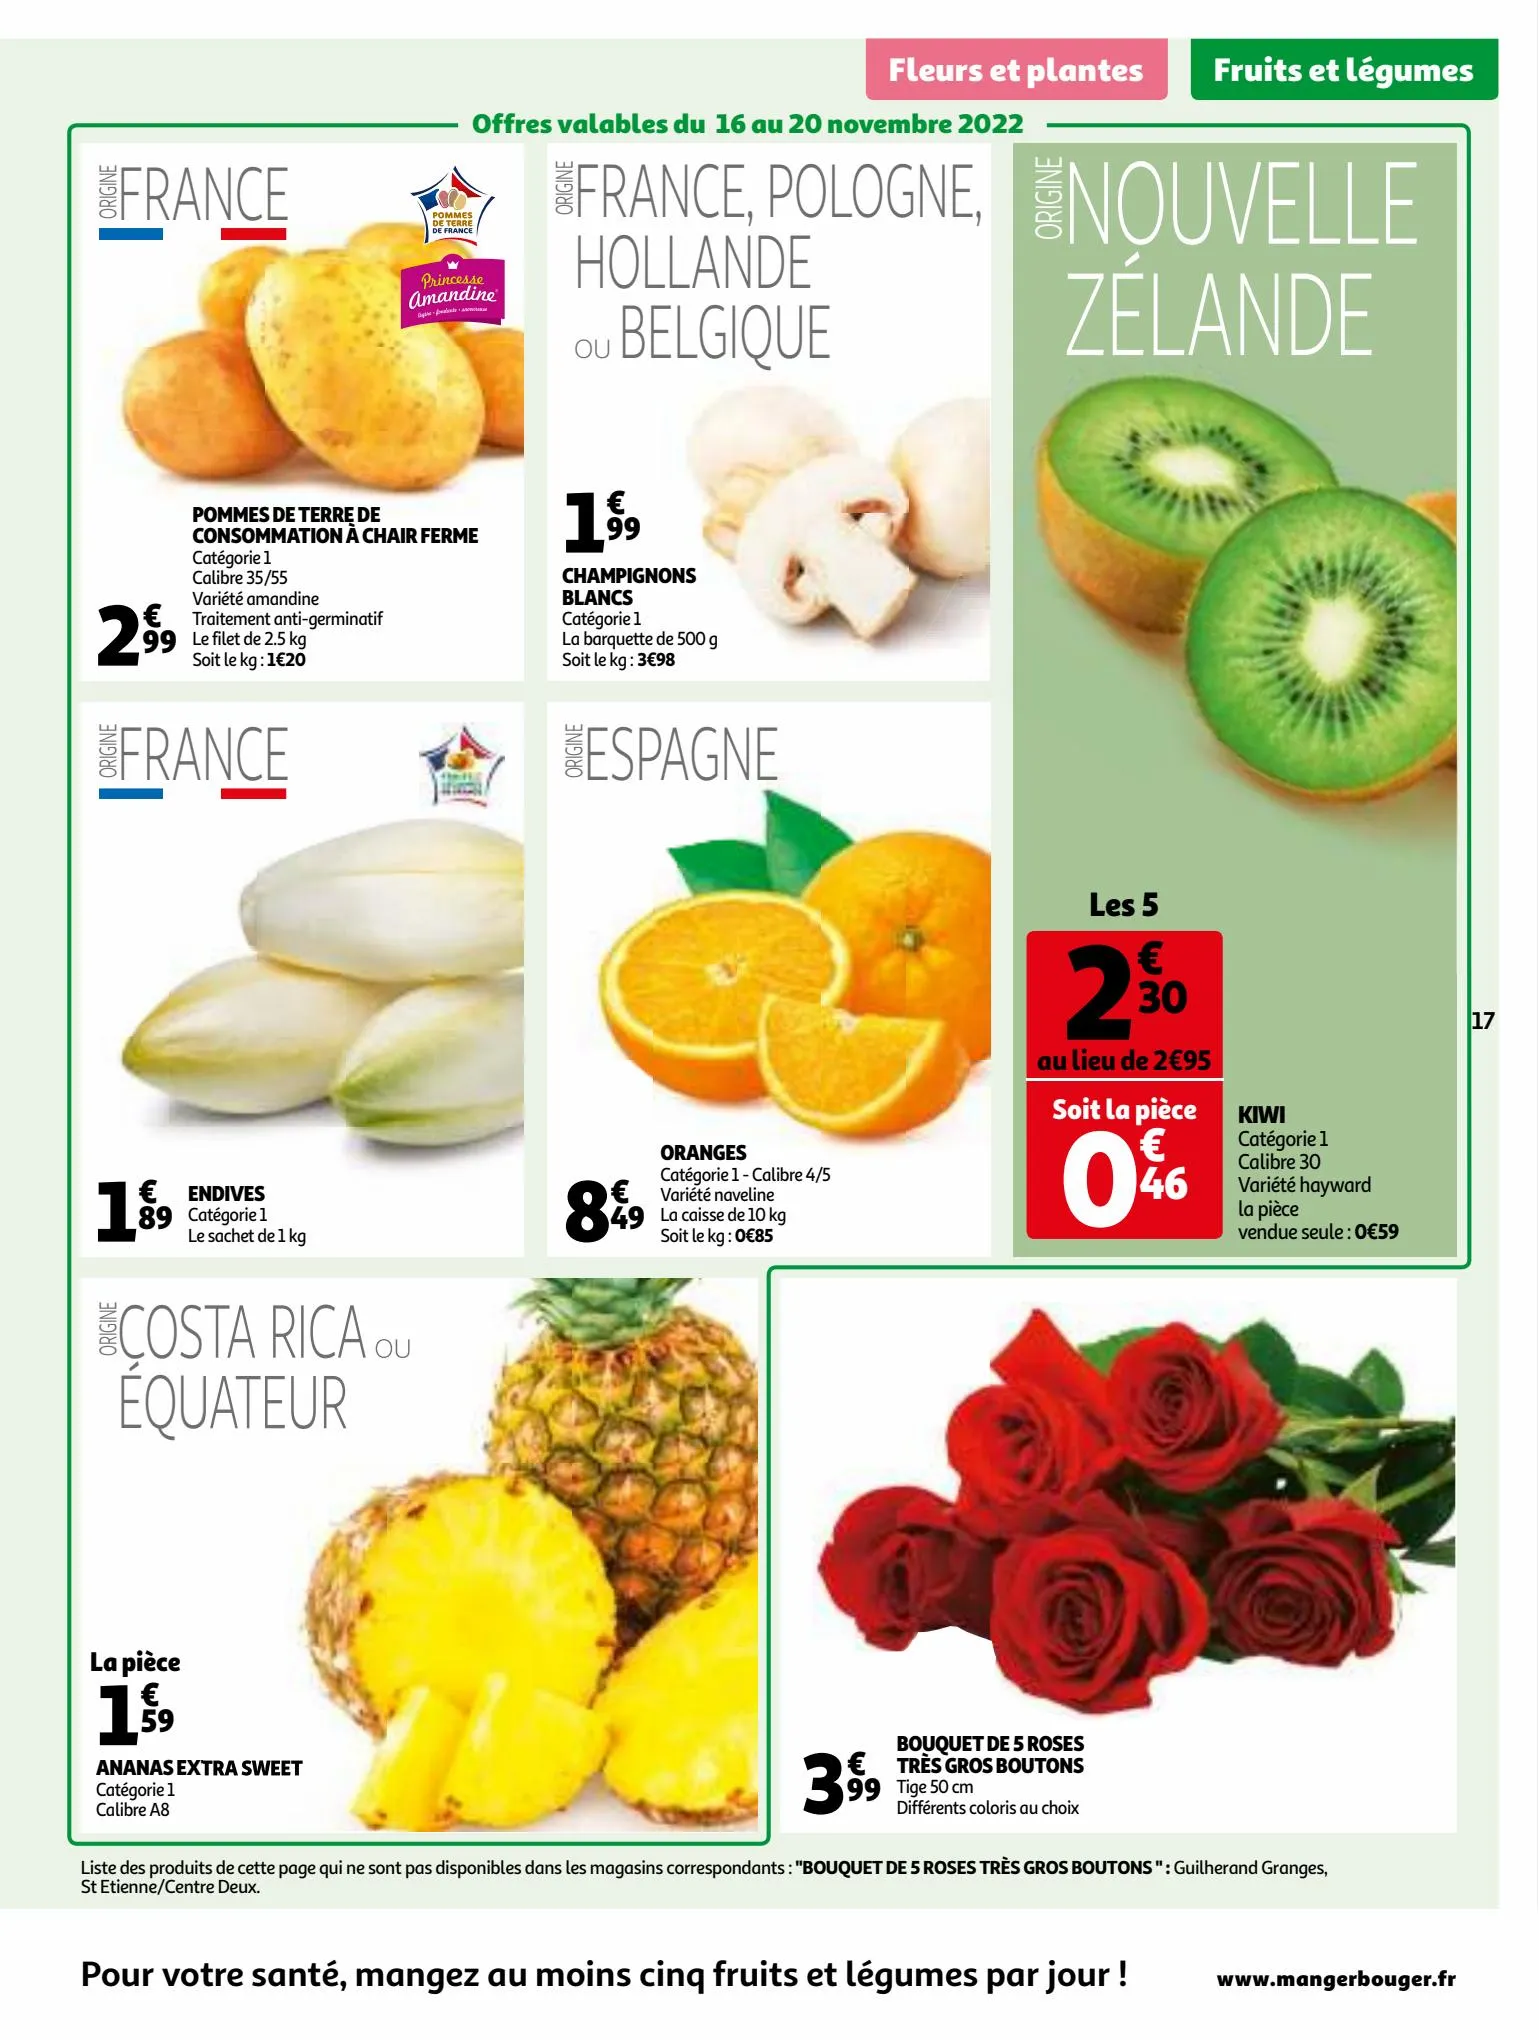 Catalogue 25 jours Auchan, page 00017